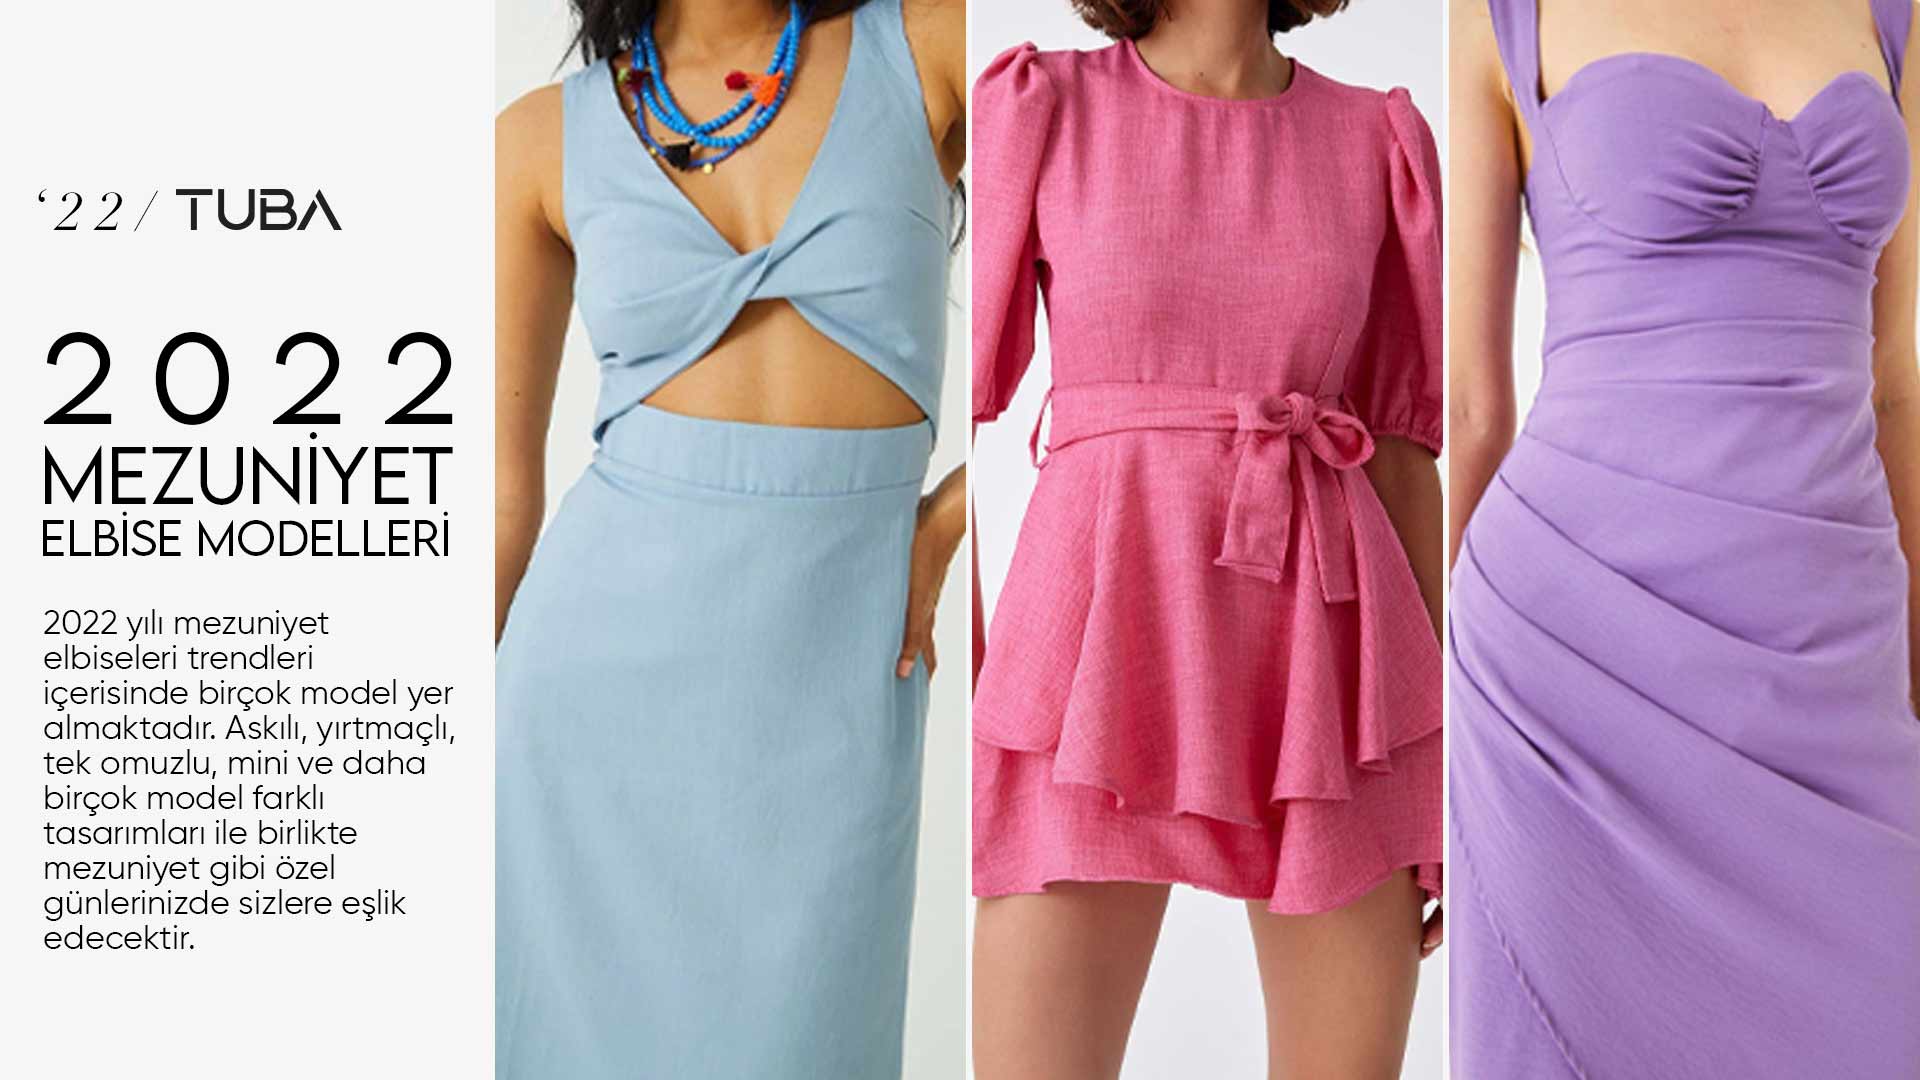 2022 Mezuniyet Elbise Modelleri Neler? | Tuba Butik